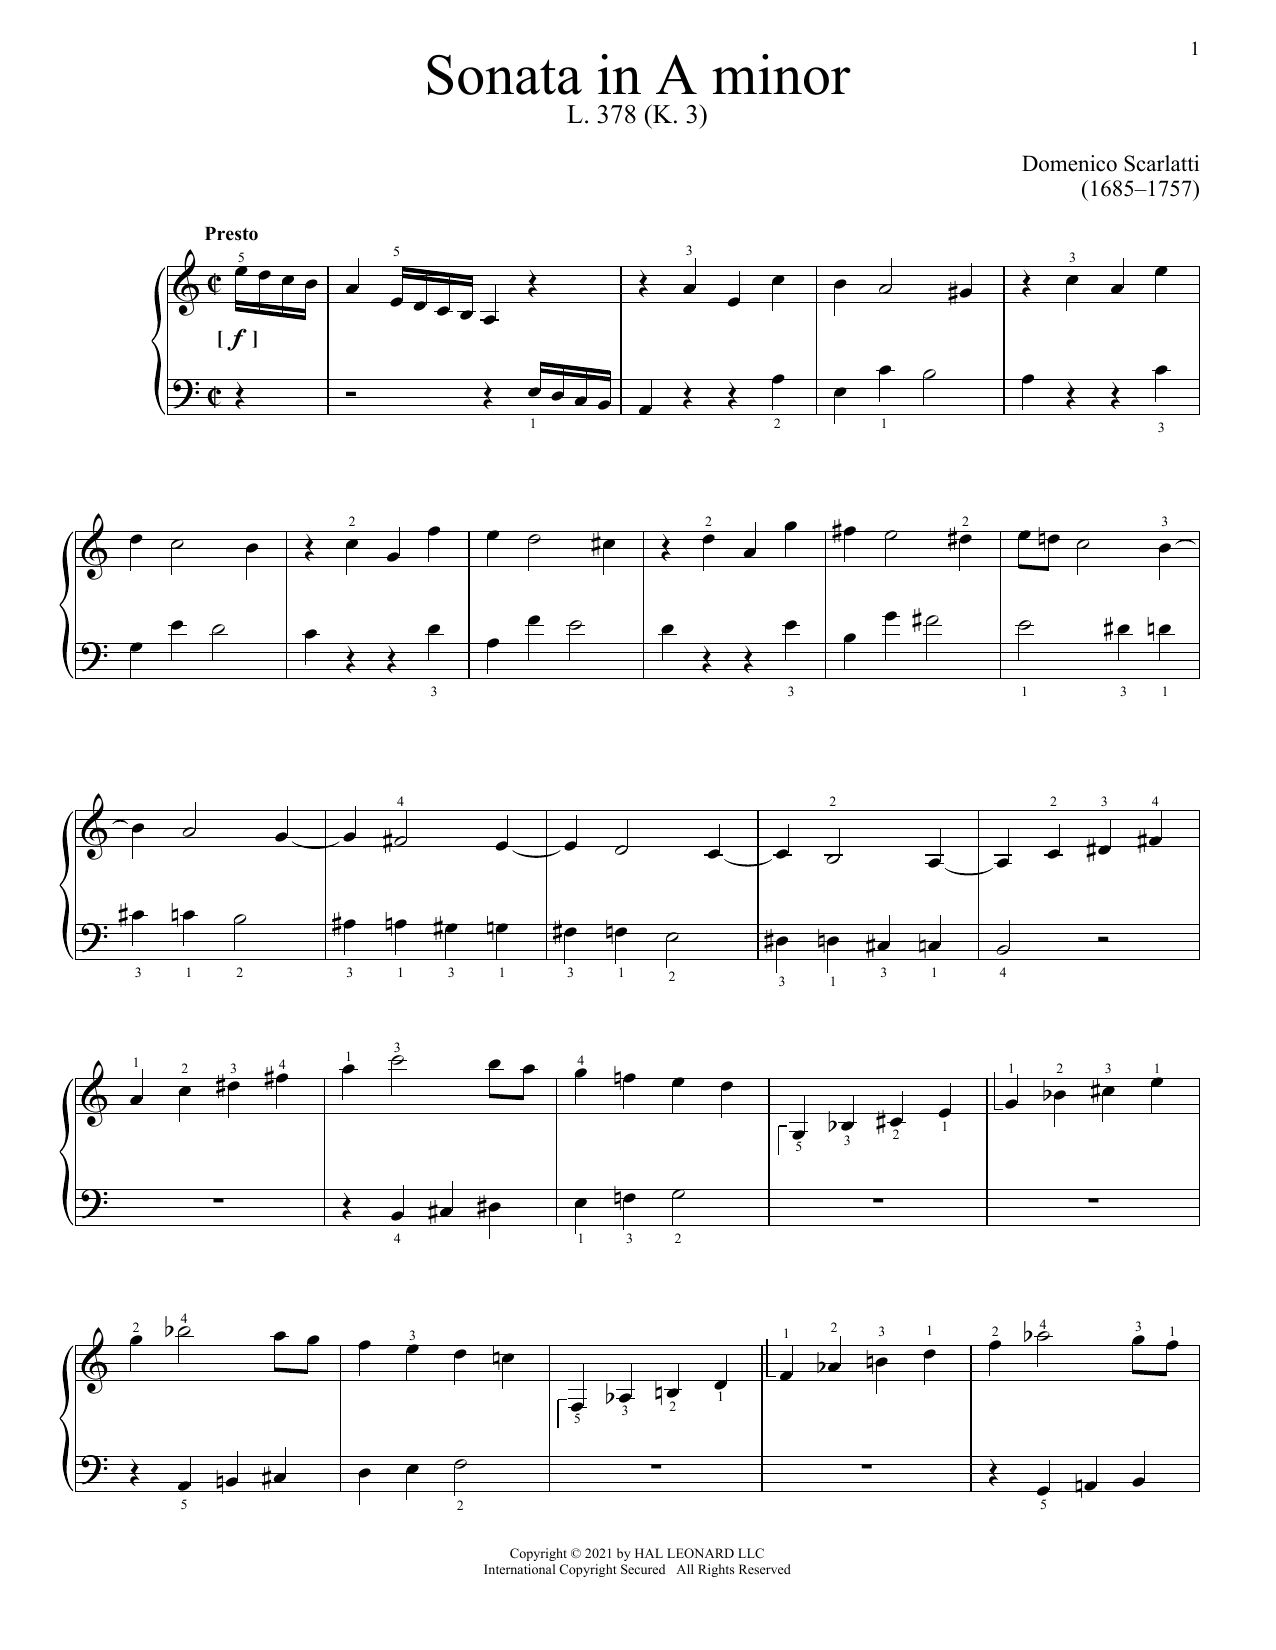 Domenico Scarlatti Sonata In A Minor, K. 3 Sheet Music Notes & Chords for Piano Solo - Download or Print PDF